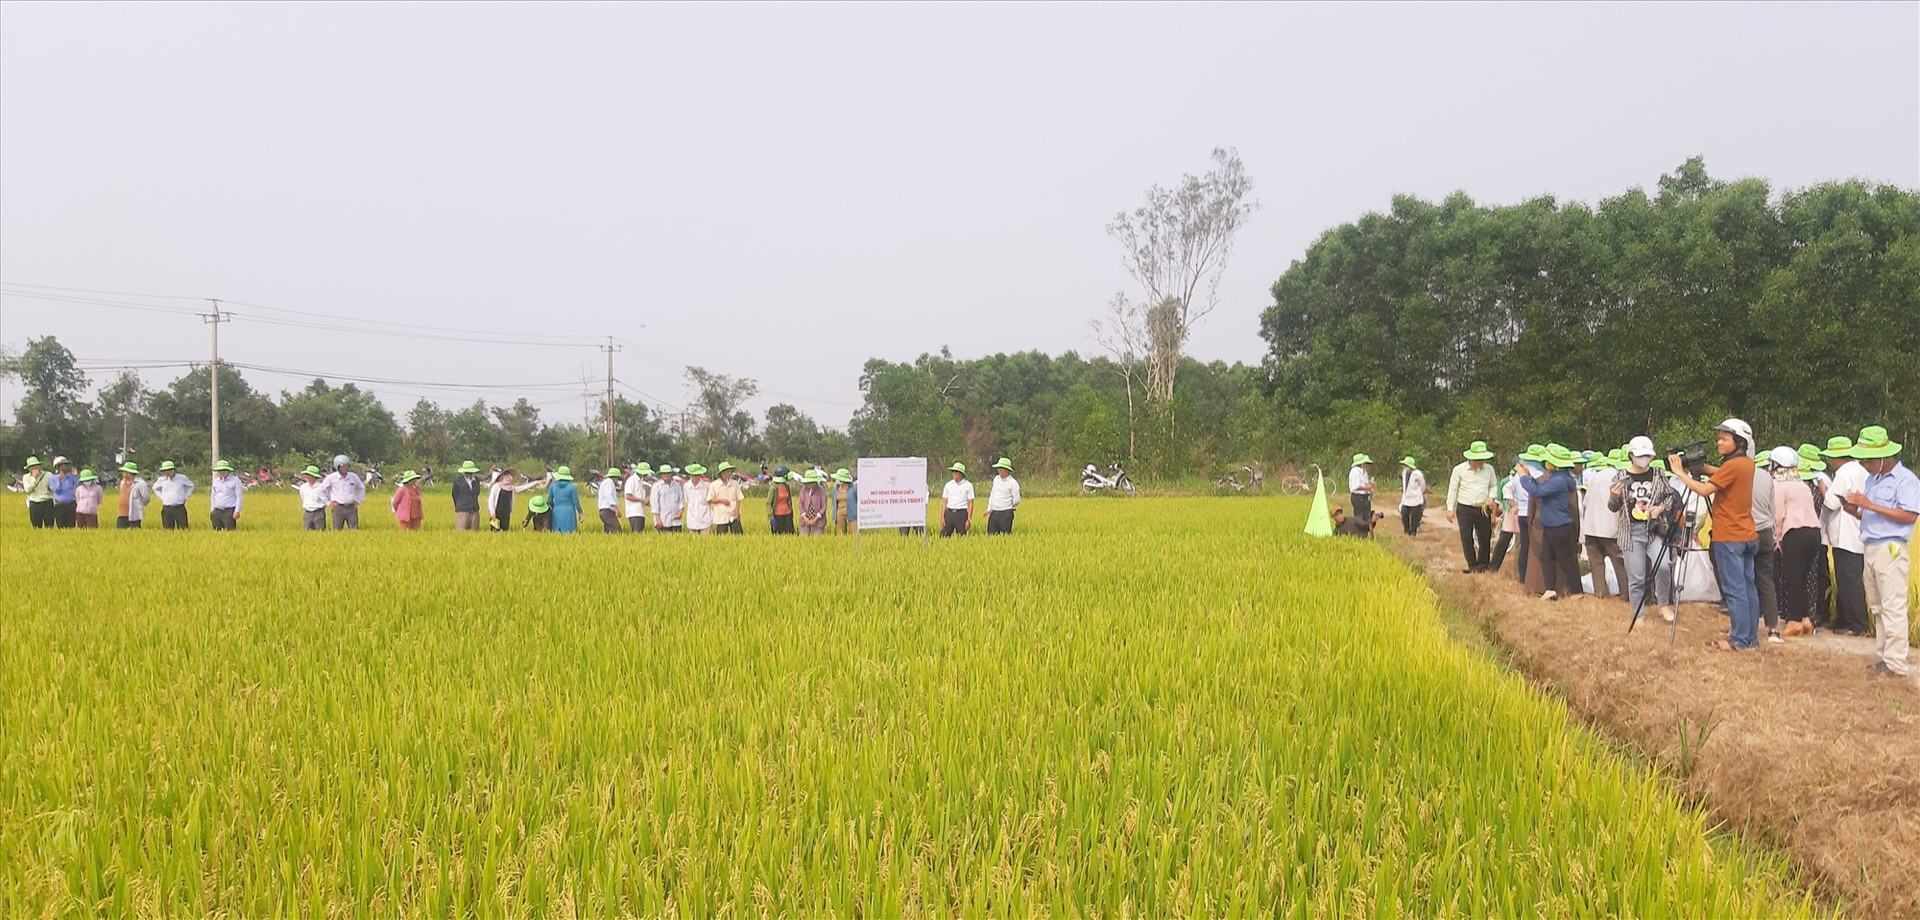 Tham quan mô hình sản xuất khảo nghiệm giống lúa thuần TBR97 tại thôn Đồng Dương (xã Bình Định Bắc, Thăng Bình) vào chiều nay 11/4.   Ảnh: N.S